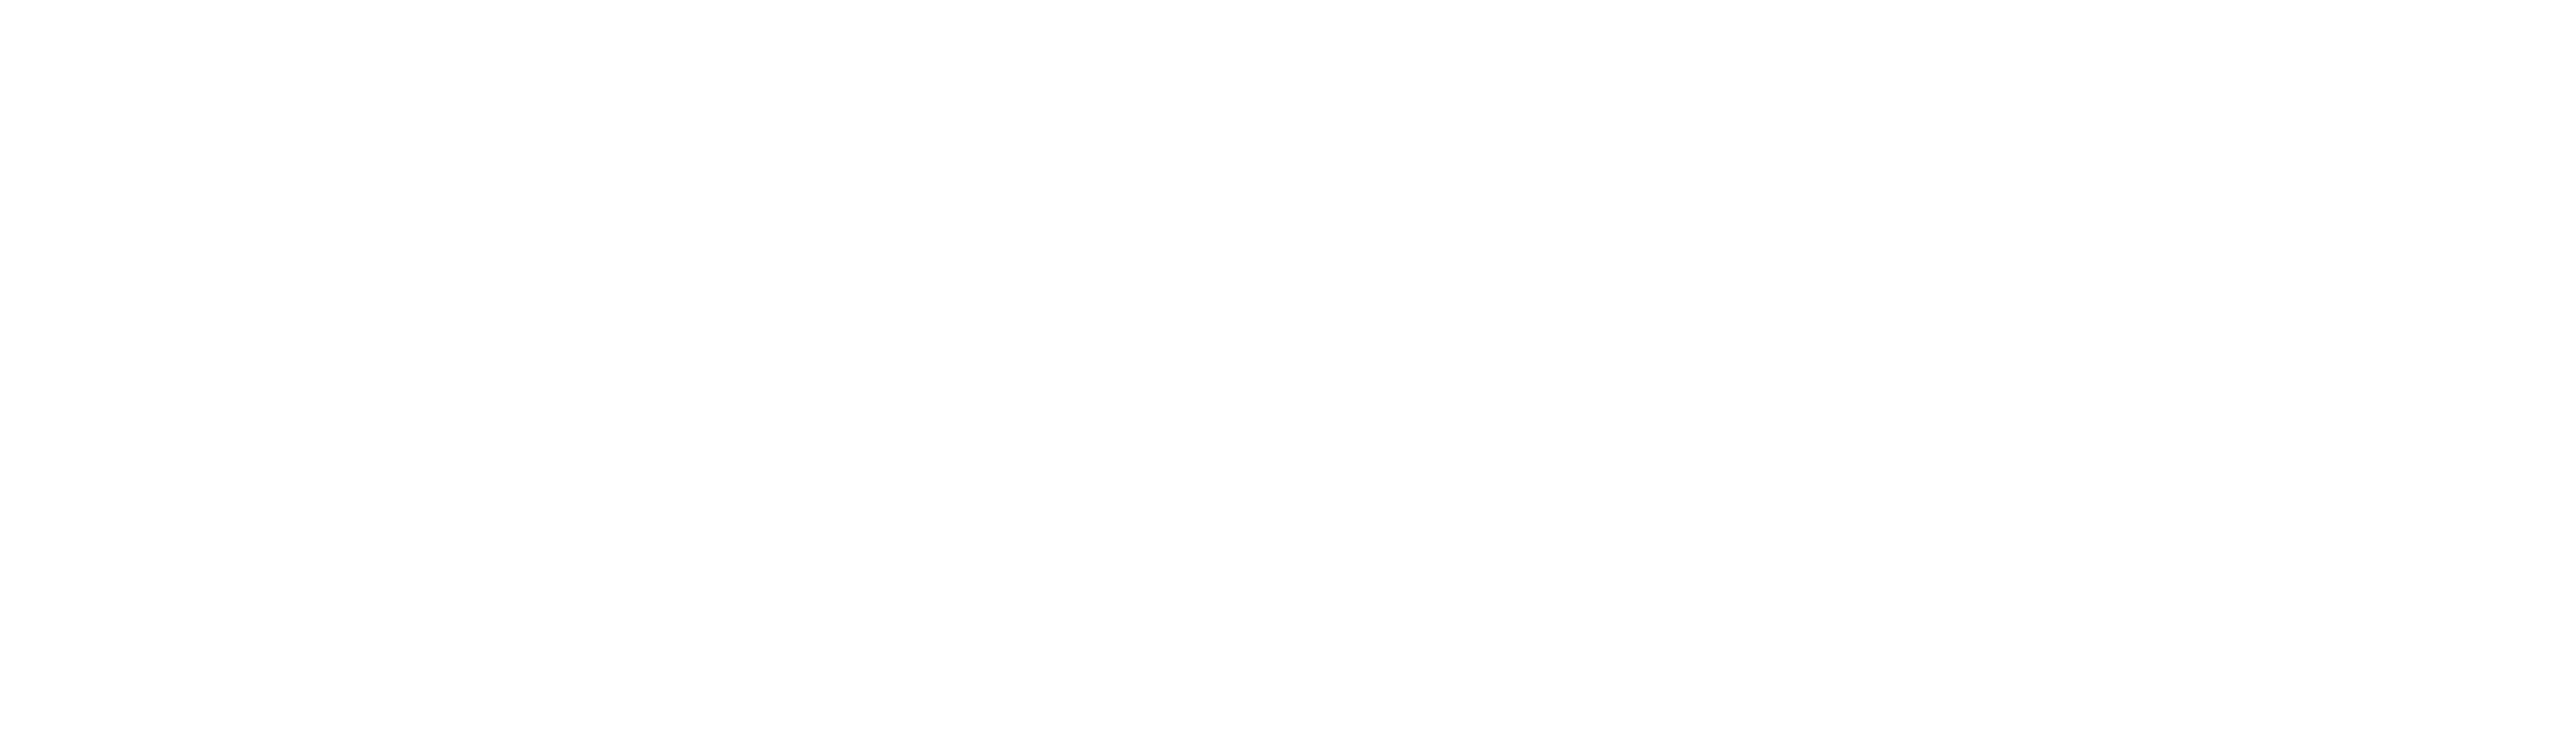 anna-Gugliandolo Logo_bianco